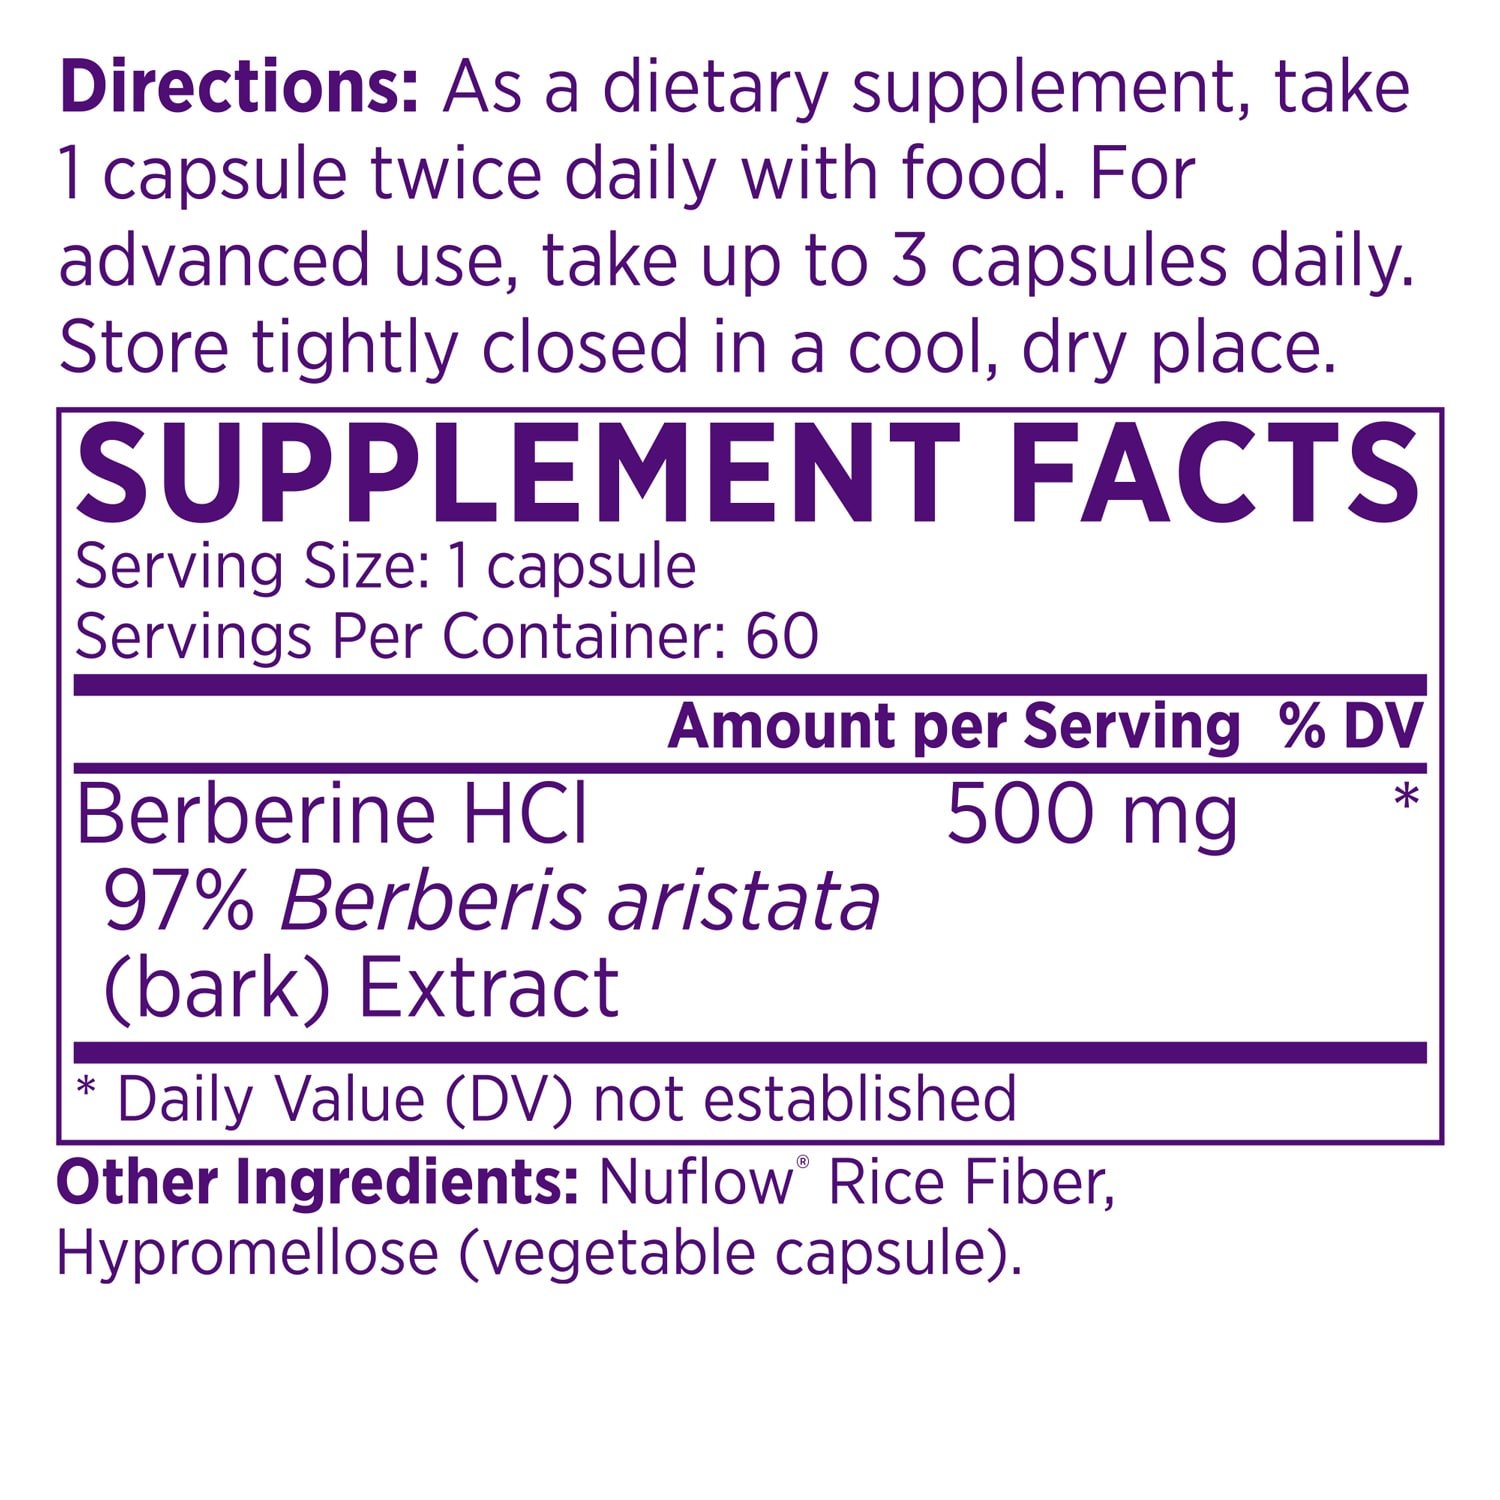 berberine supplement facts